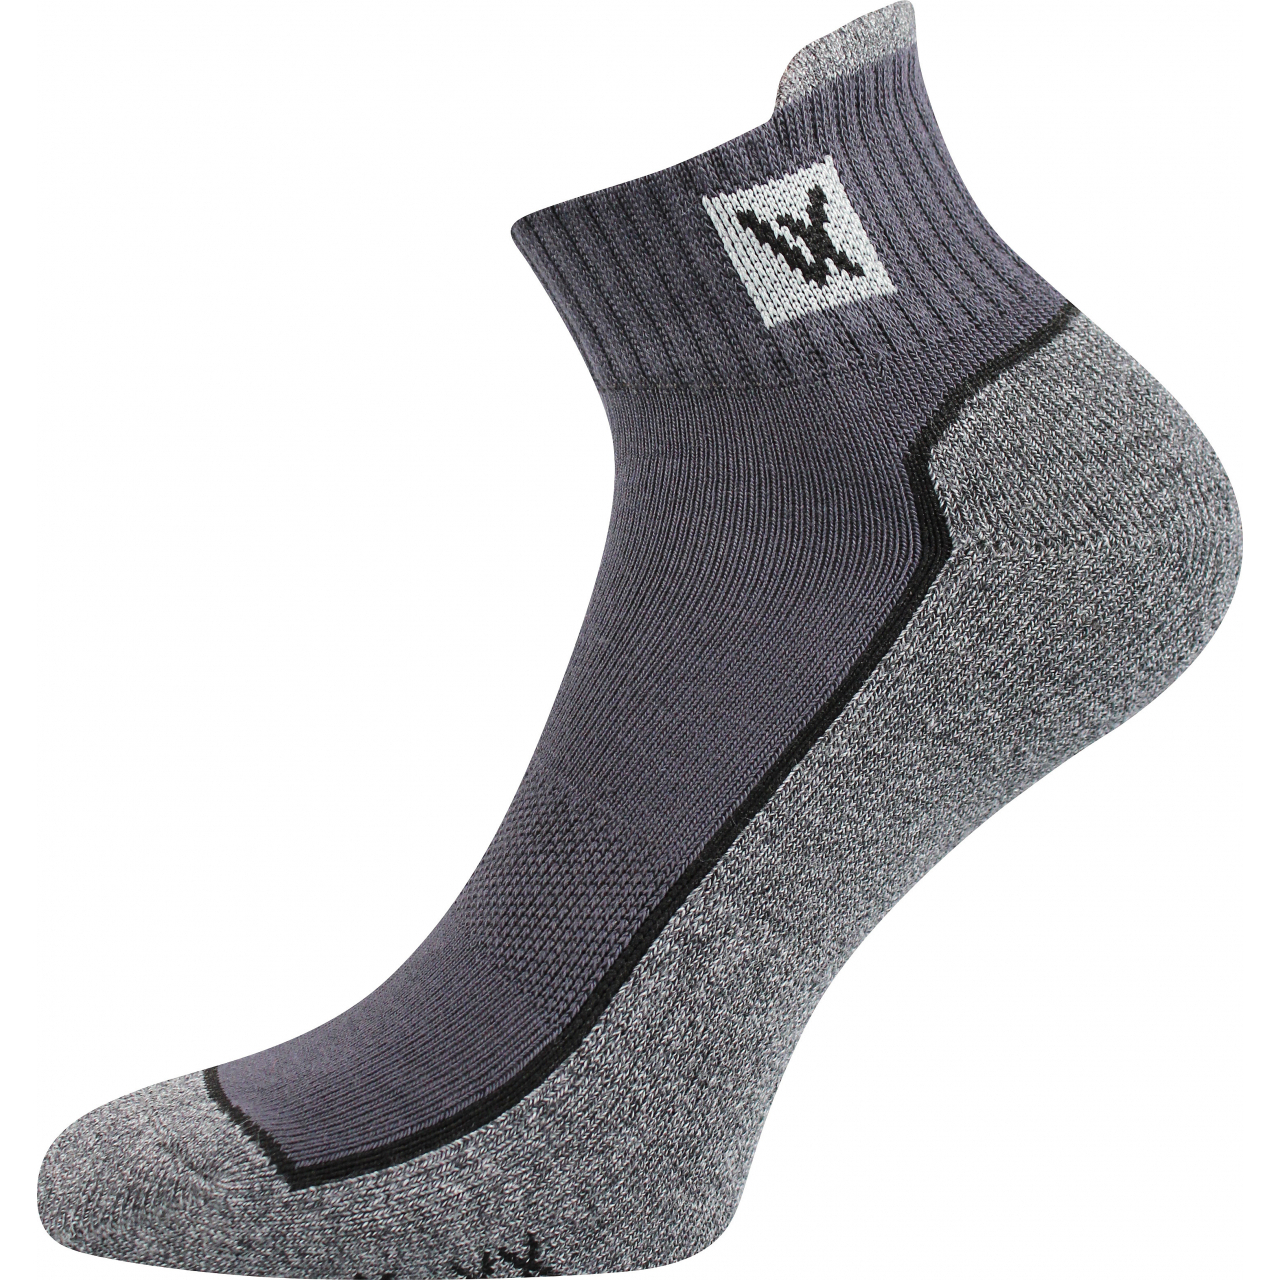 Ponožky unisex sportovní Voxx Nesty 01 - tmavě šedé-šedé, 43-46